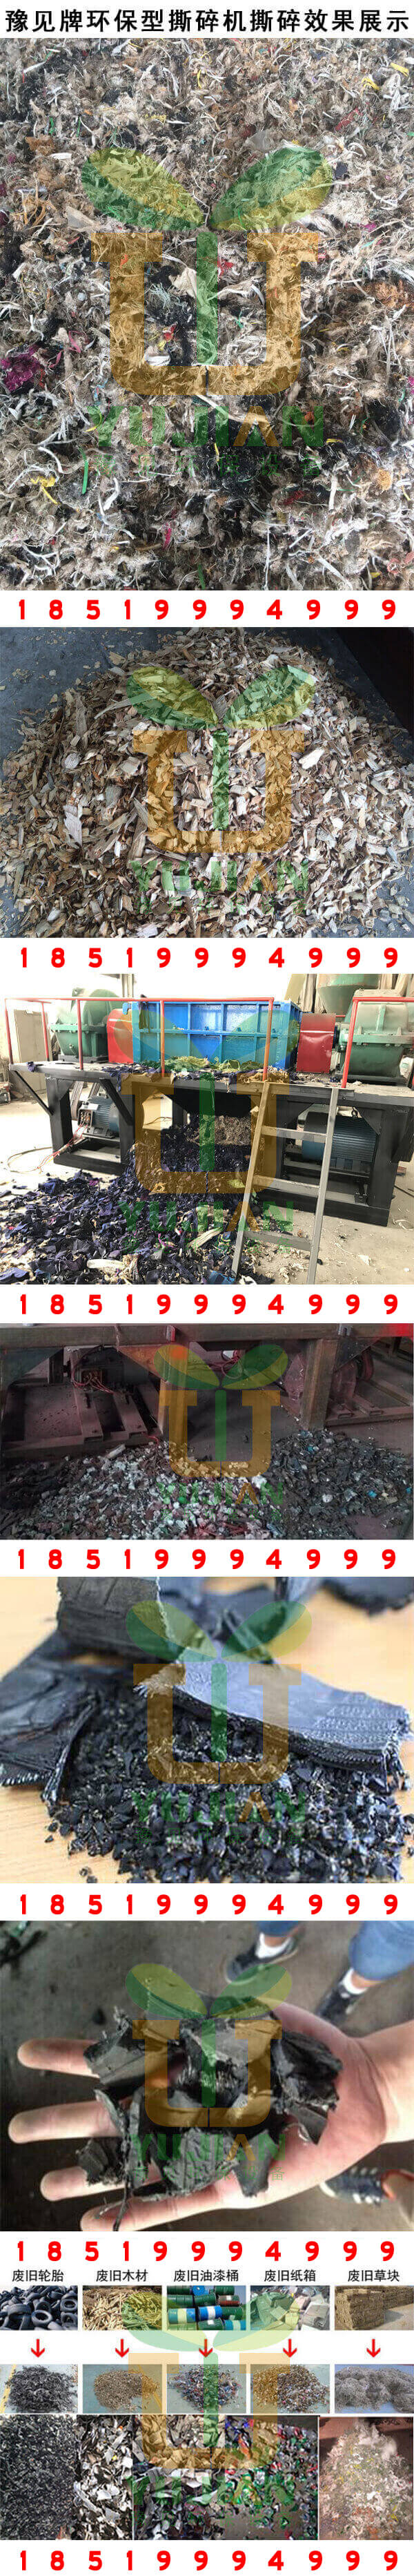 九游会牌环保型编织袋吨包撕碎机撕碎效果展示